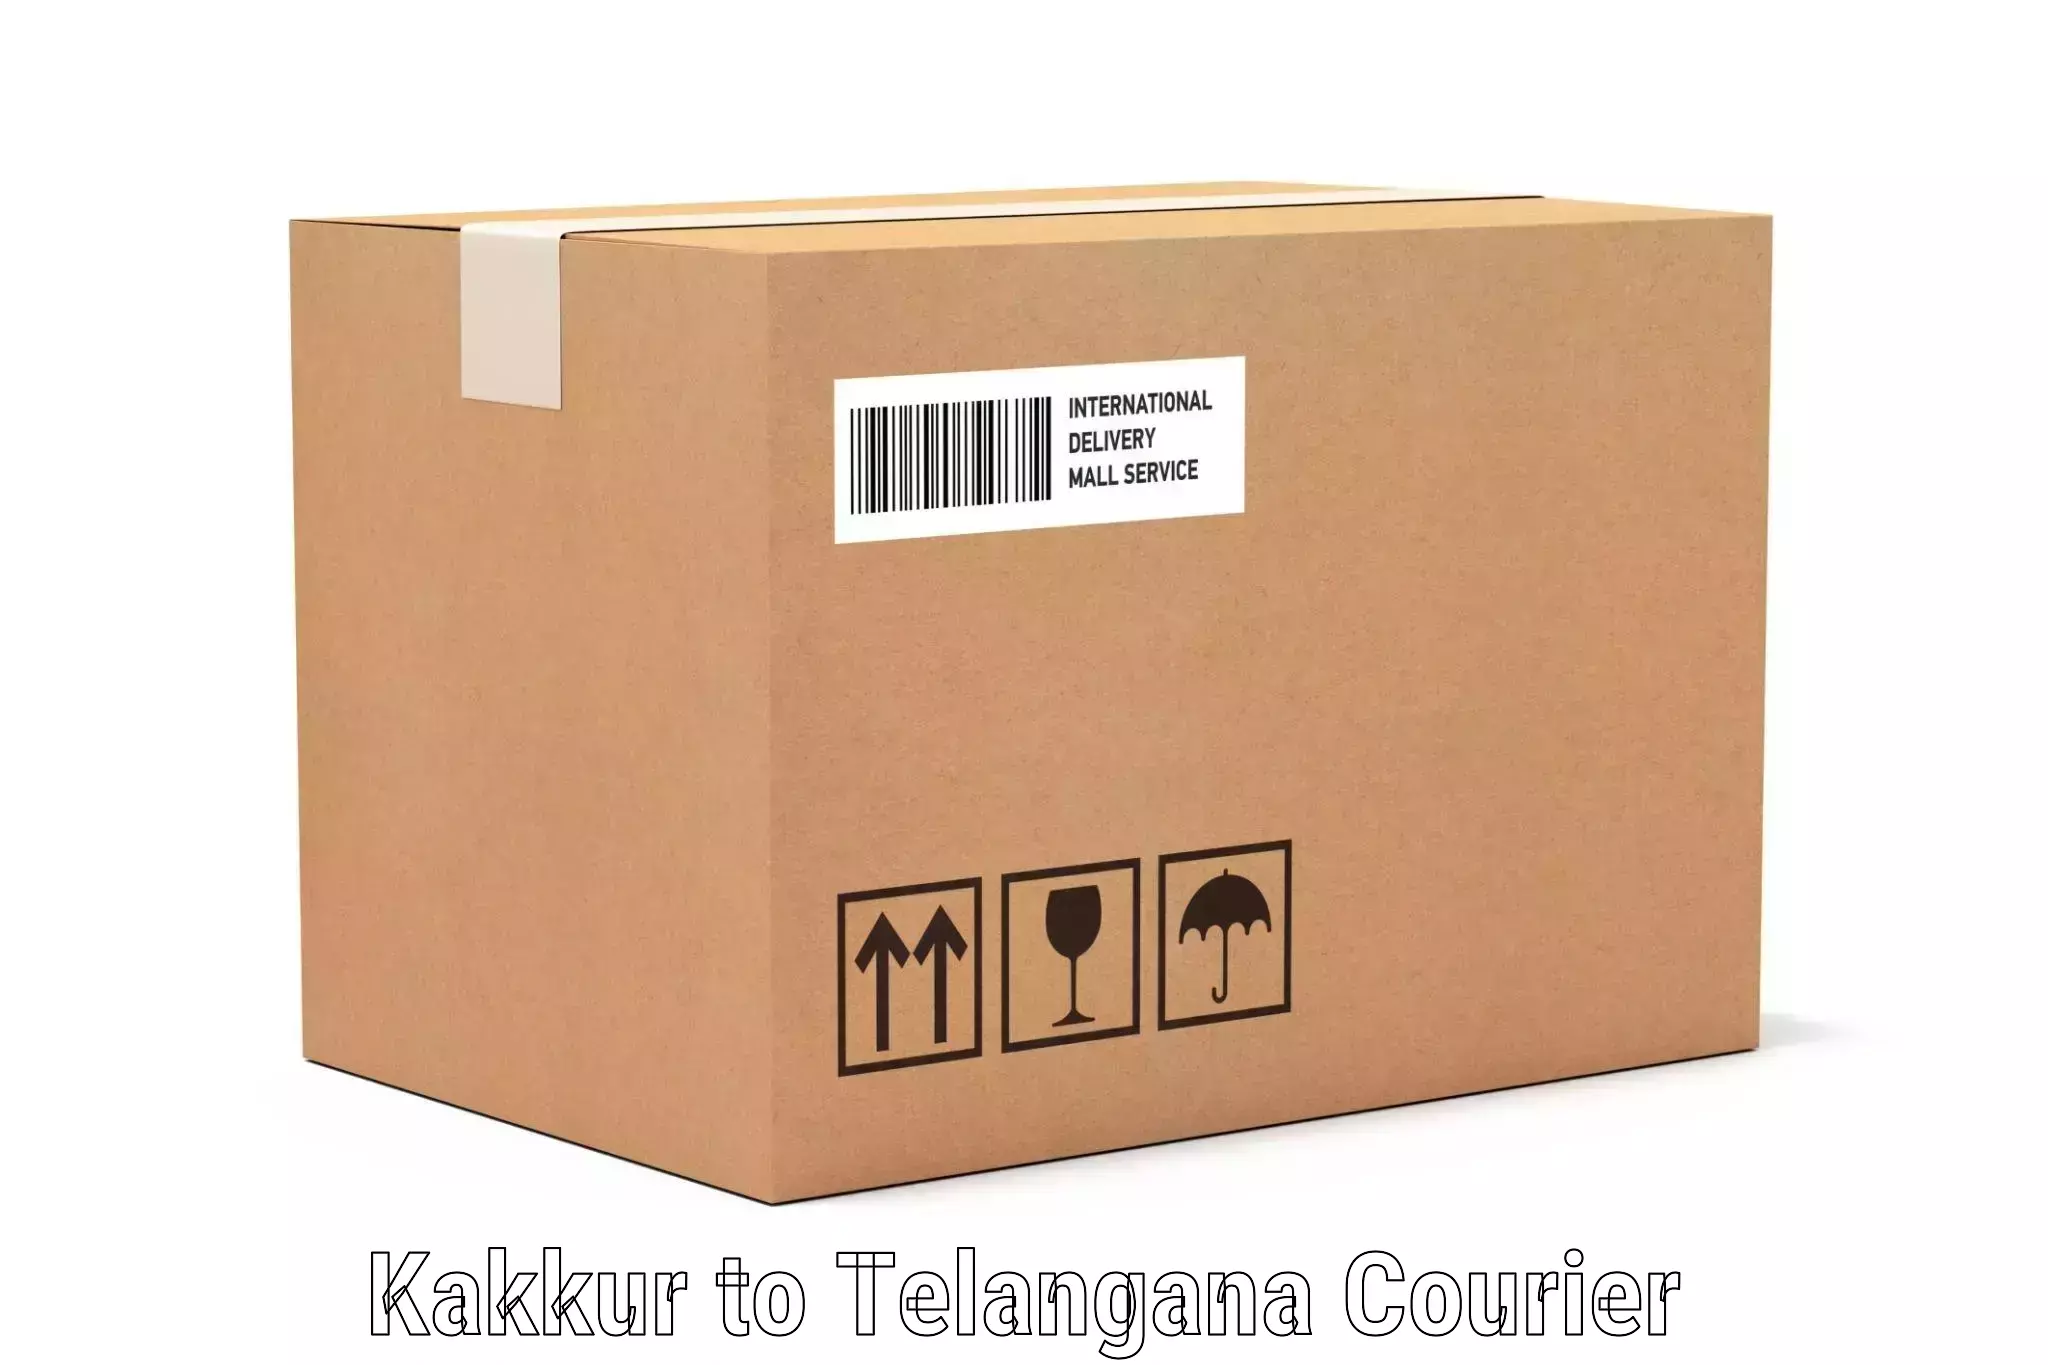 Baggage transport scheduler Kakkur to Yellandu